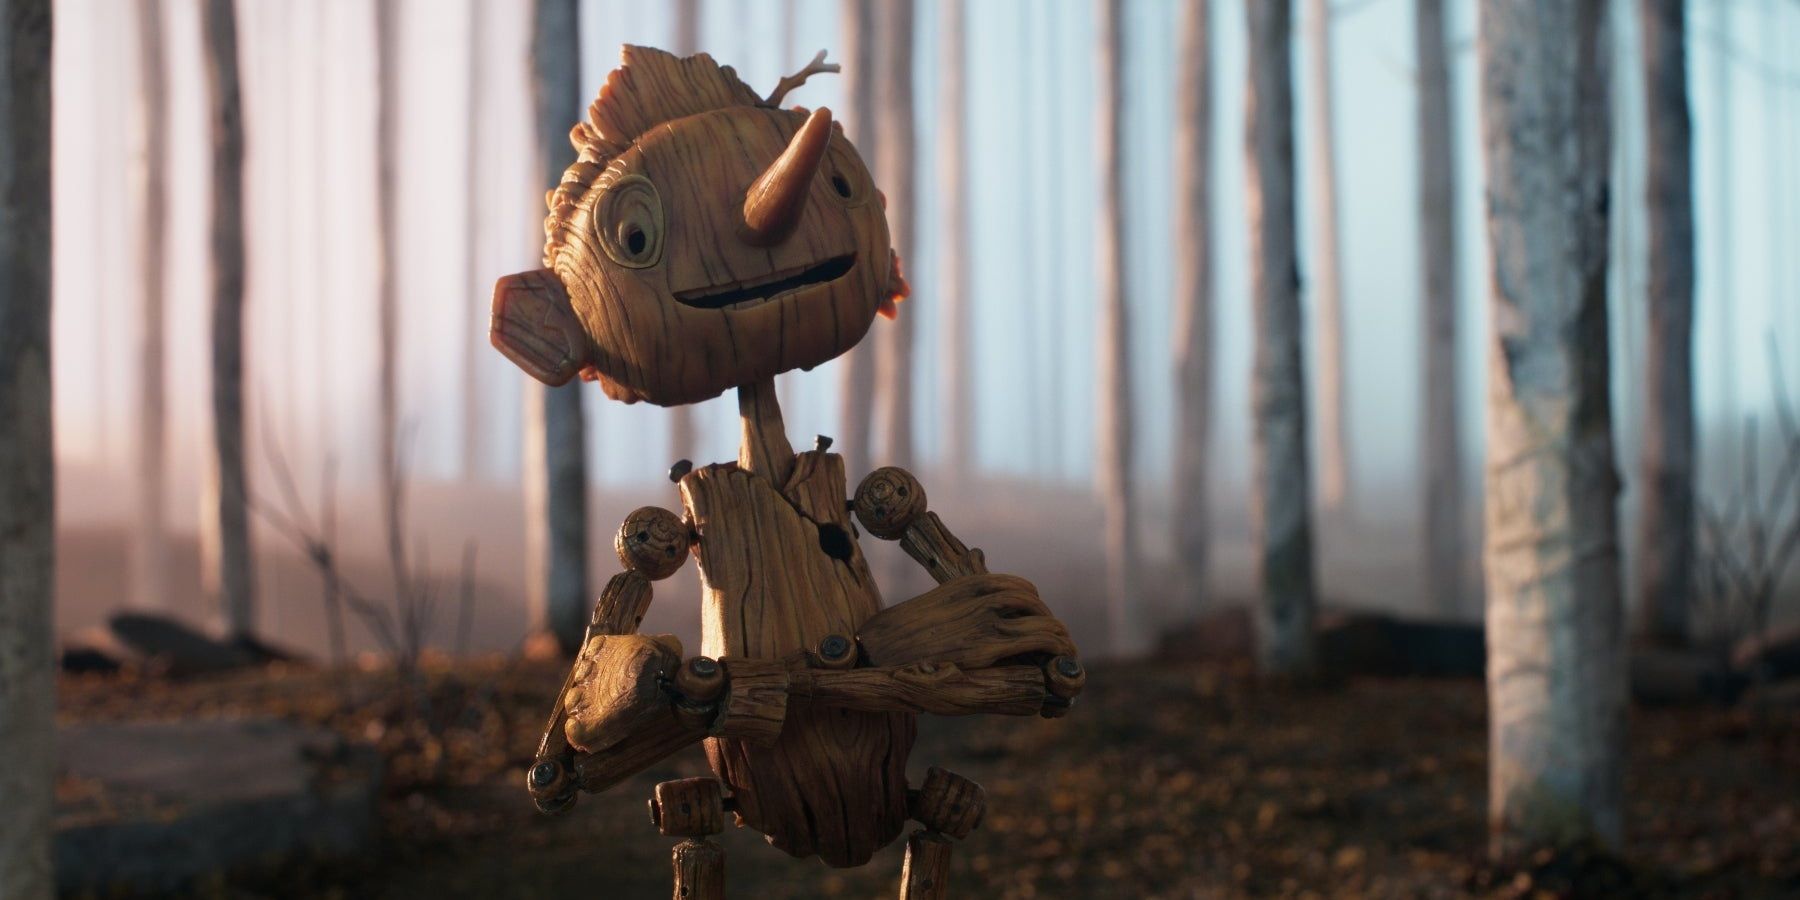 Pinocchio in the woods in Guillermo del Toro's Pinocchio